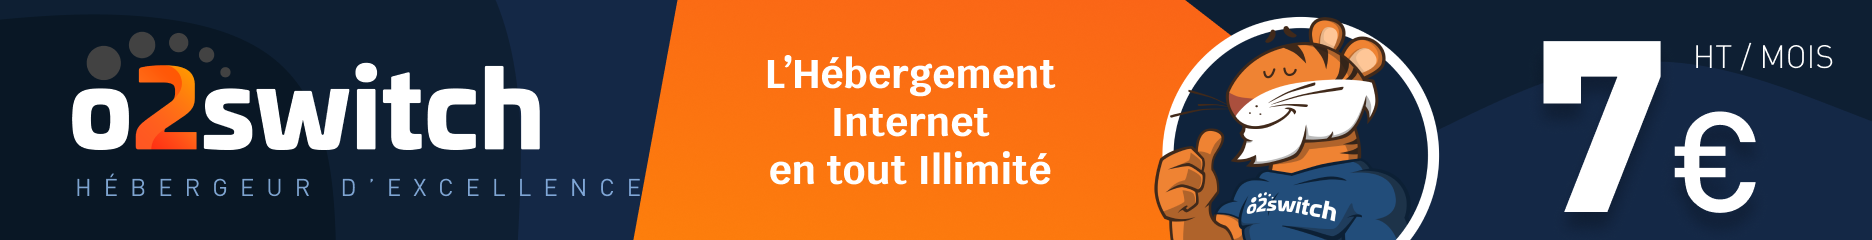 Promouvoir L Hebergement Web Haute Qualite O2switch